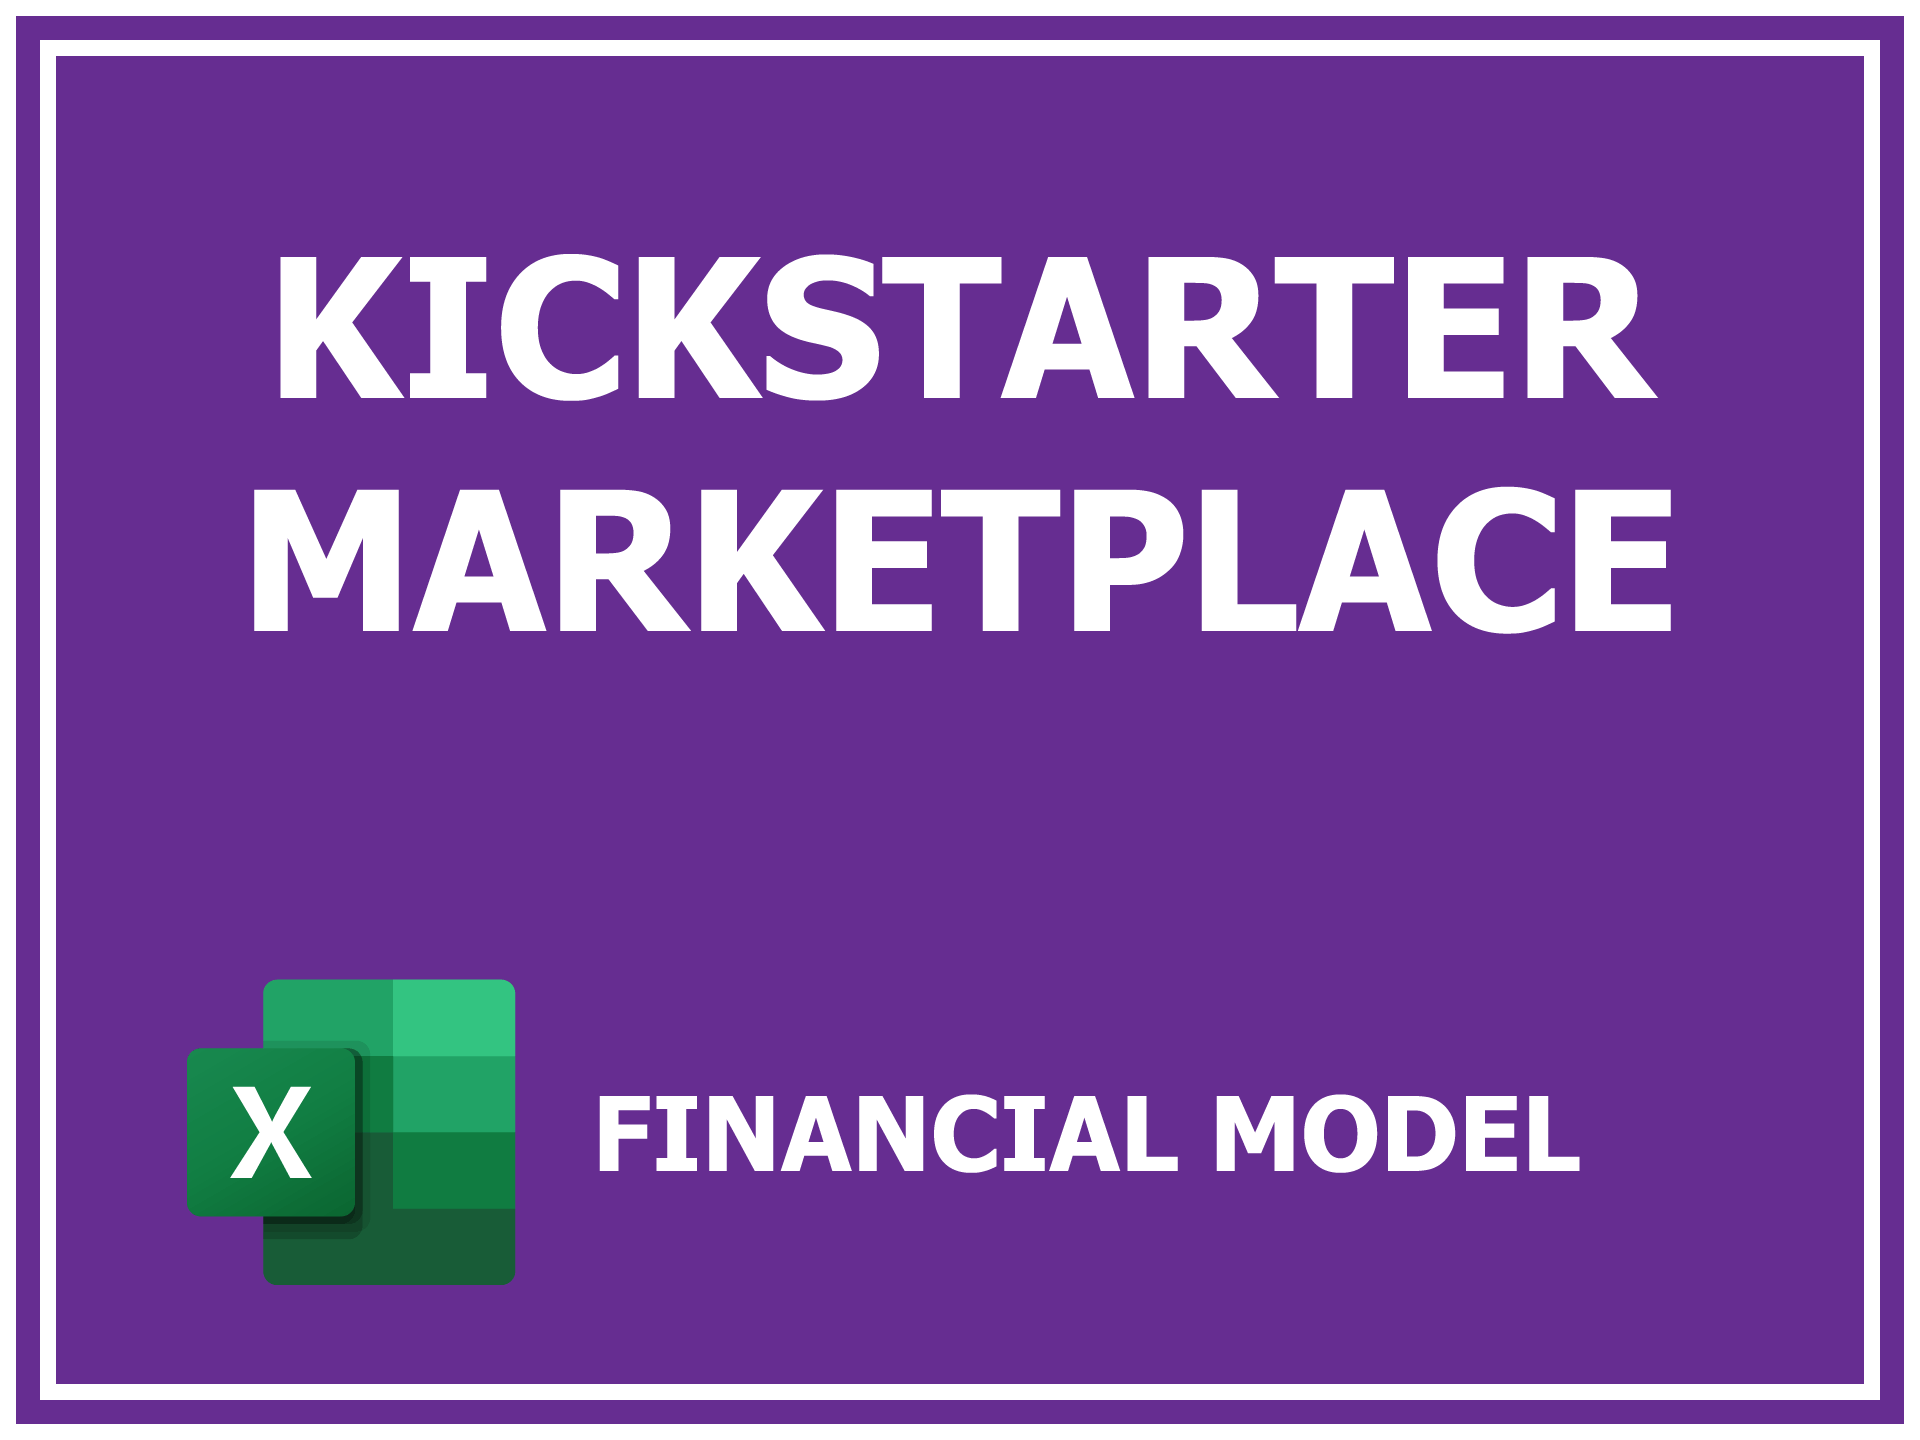 Kickstarter Marketplace